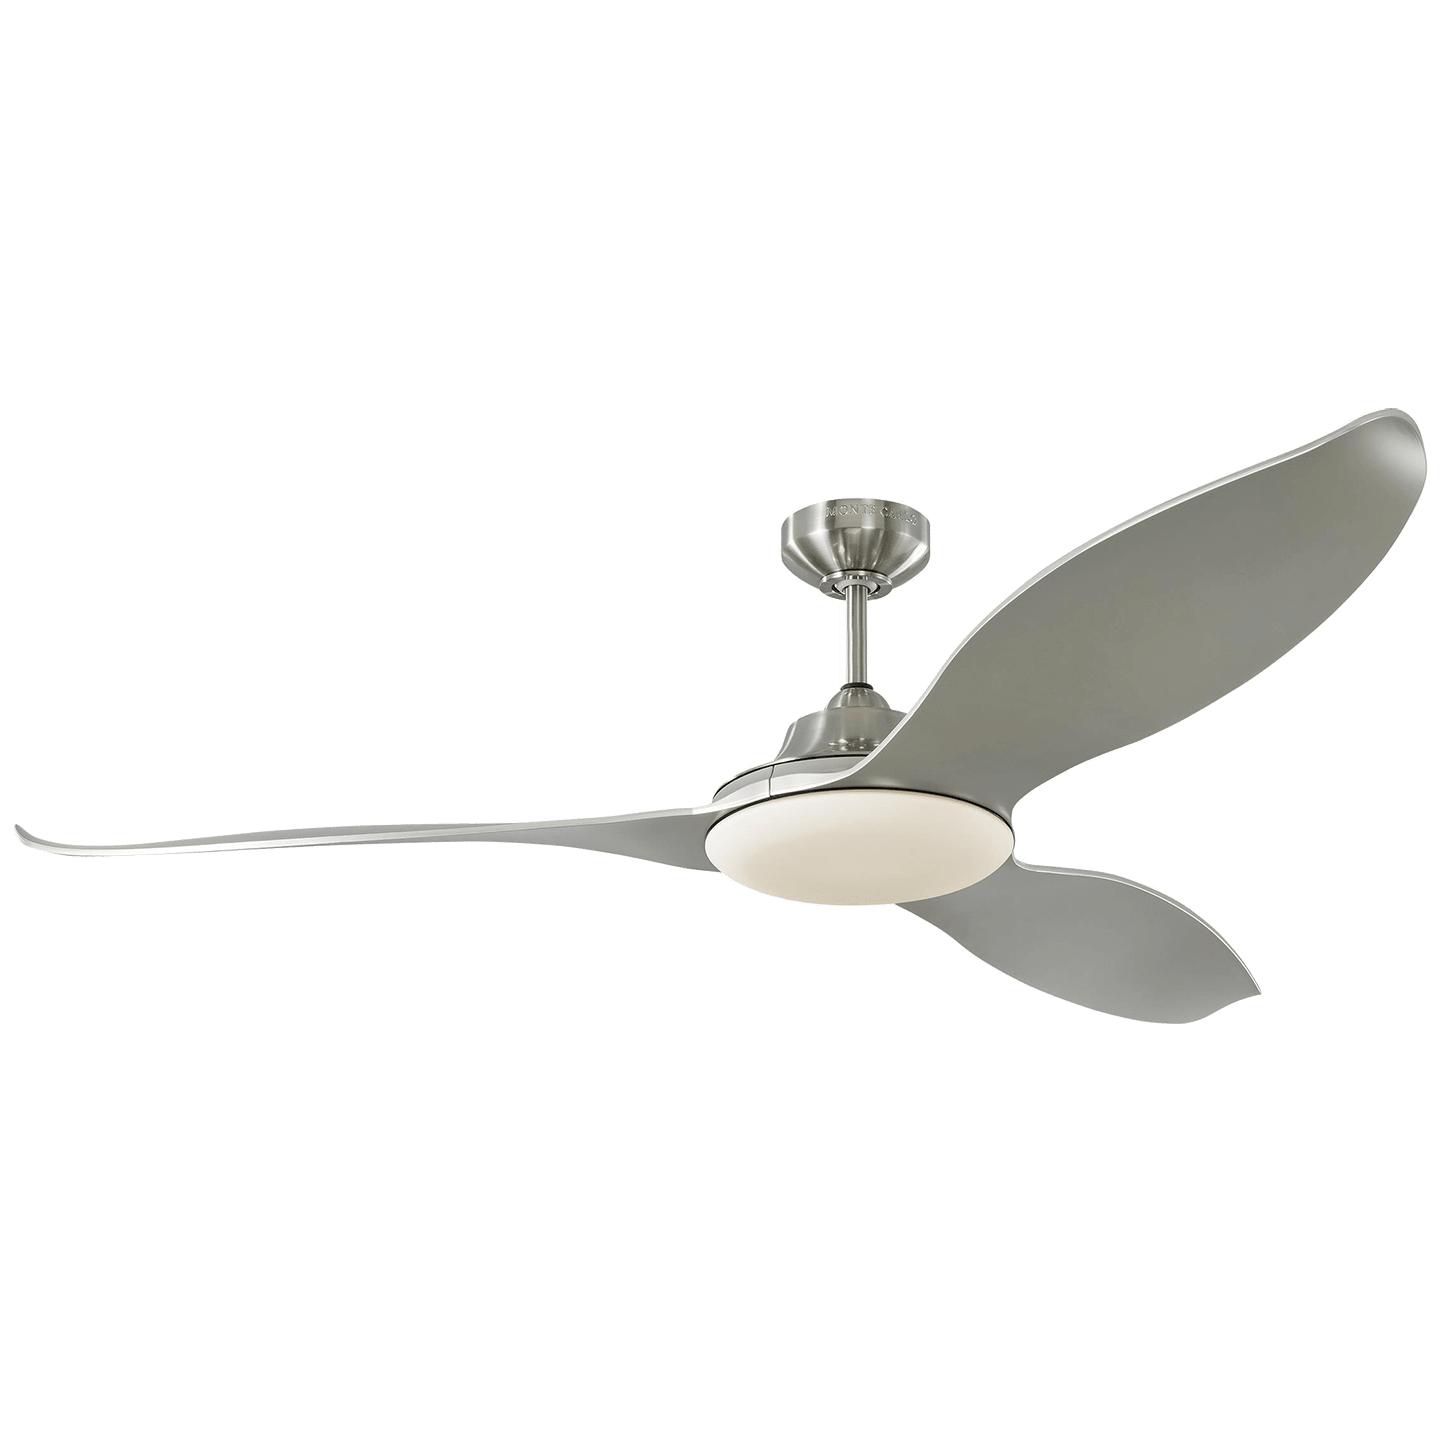 Купить Потолочный вентилятор Stockton 60" LED Ceiling Fan в интернет-магазине roooms.ru